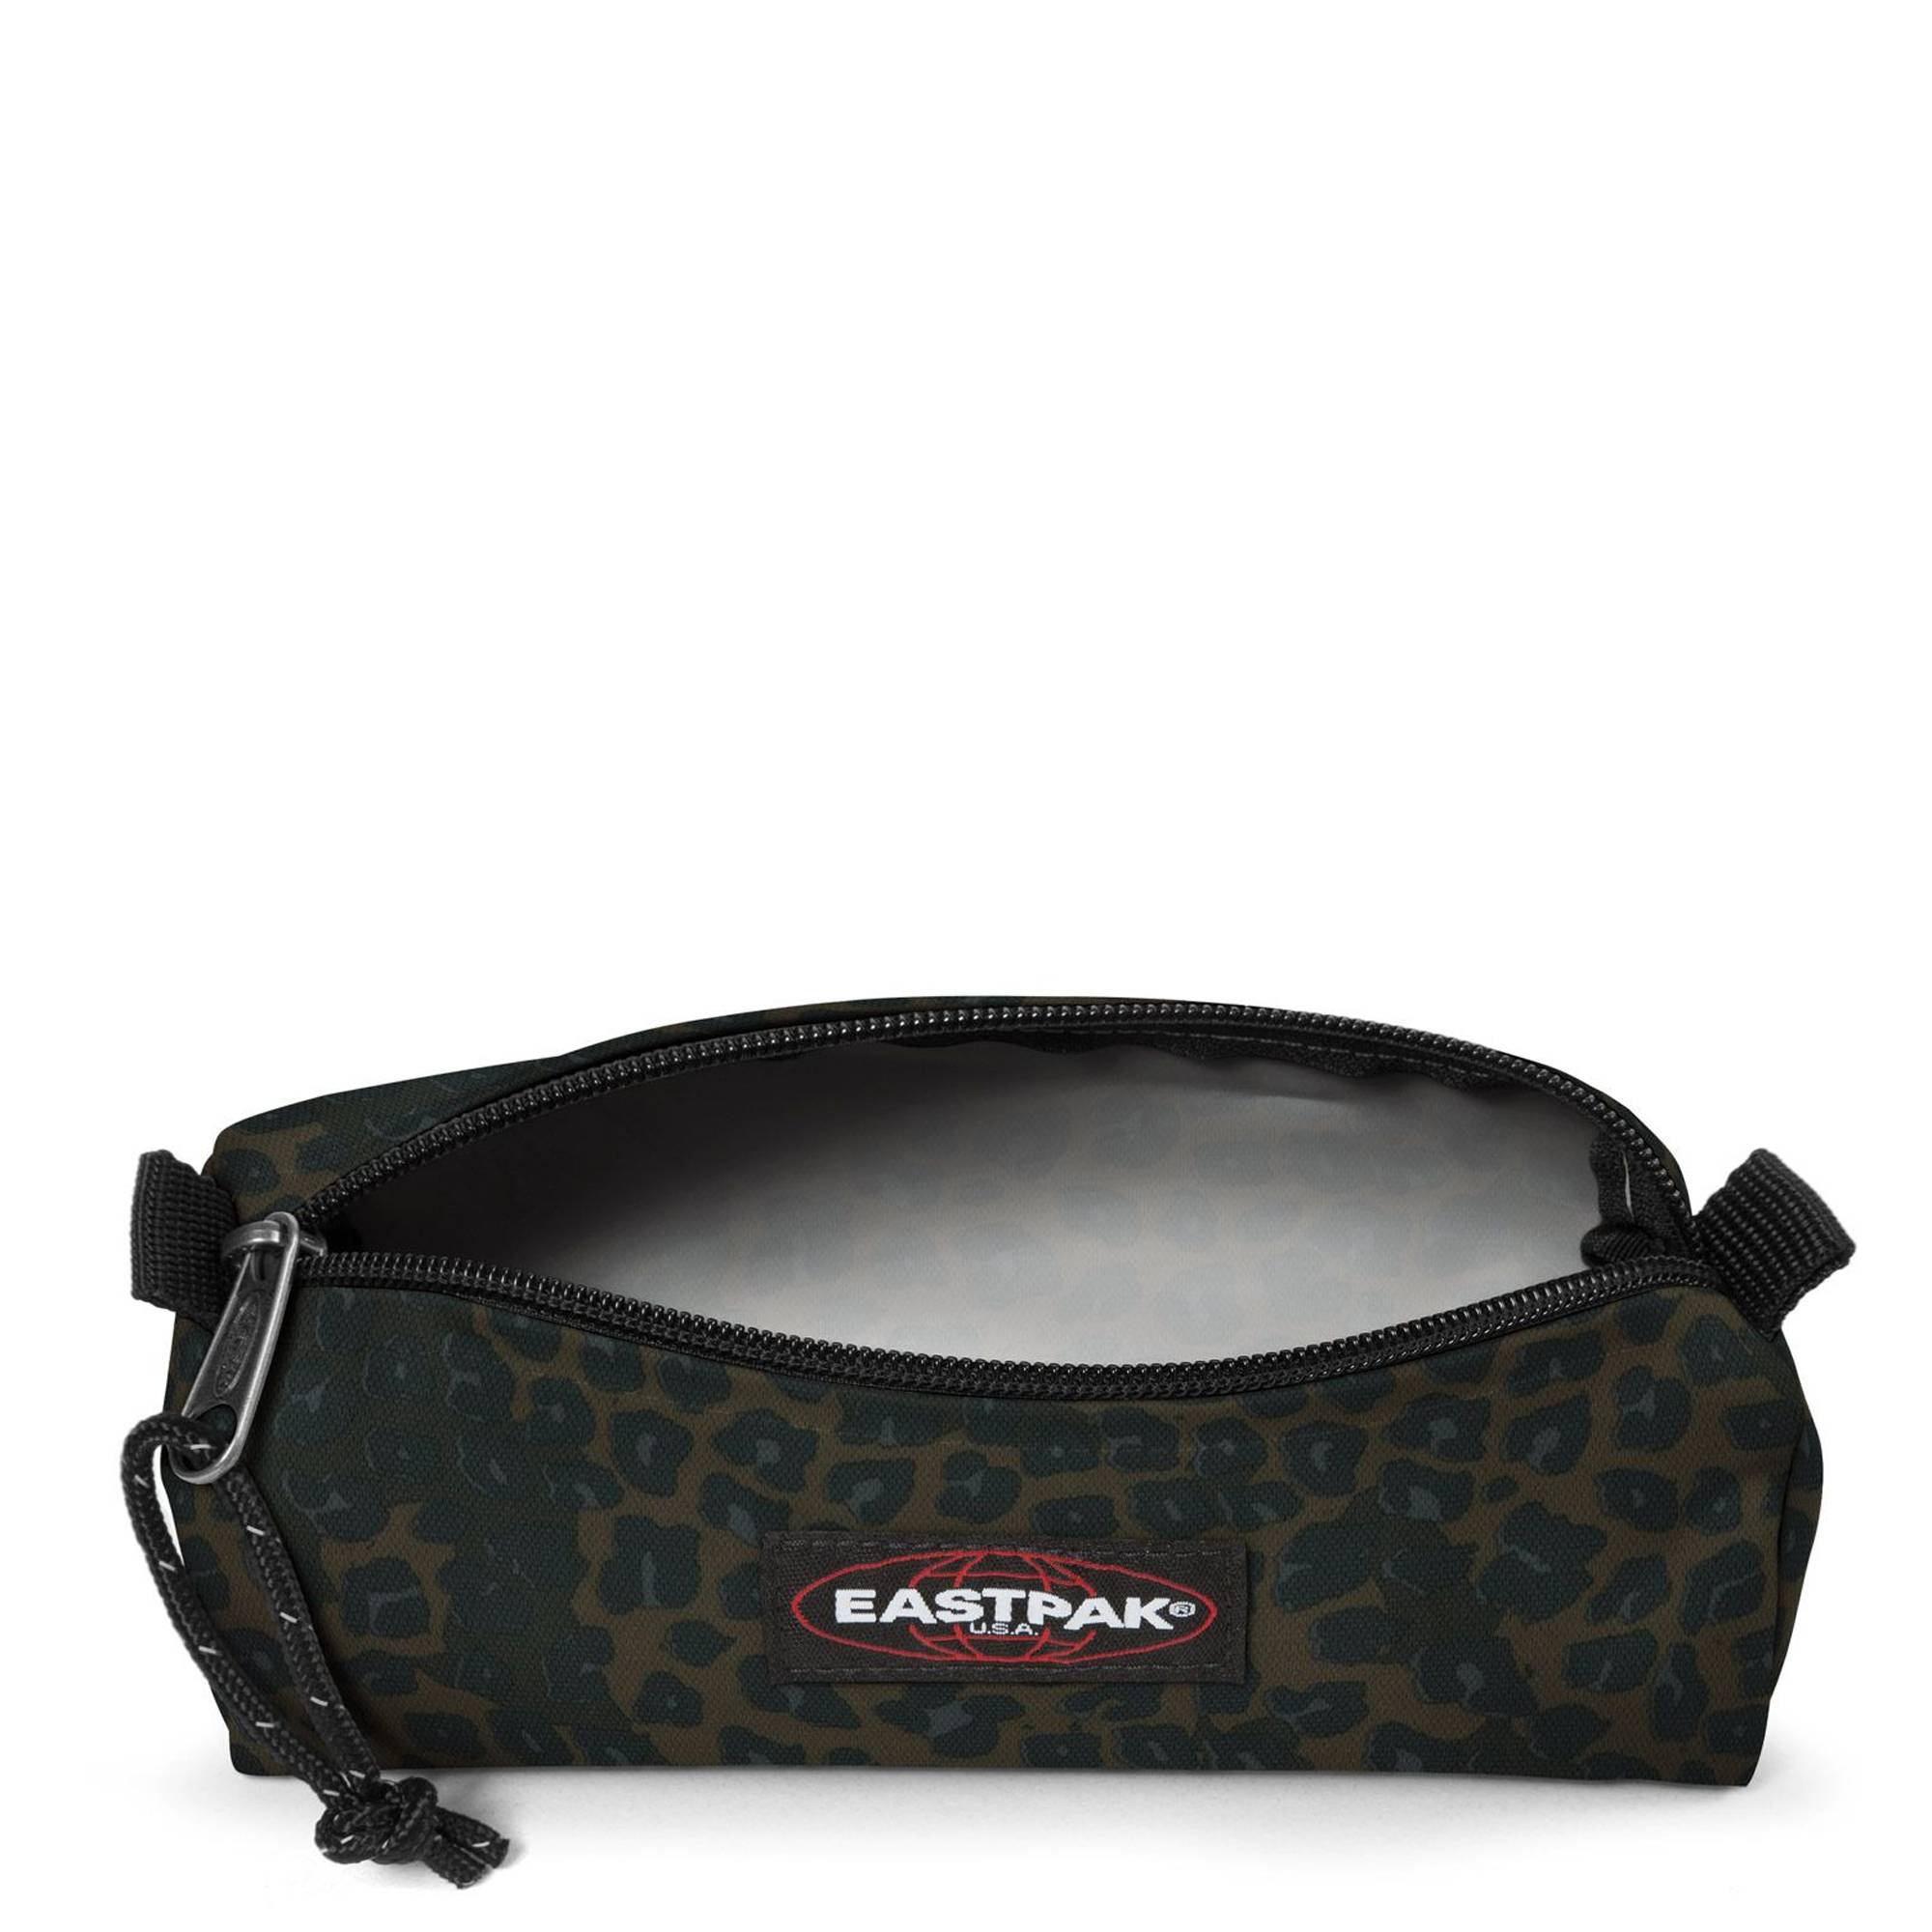 Trousse simple Eastpak Benchmark Authentic EK372 4E4 couleur Funky Leopard (Marron), intérieur